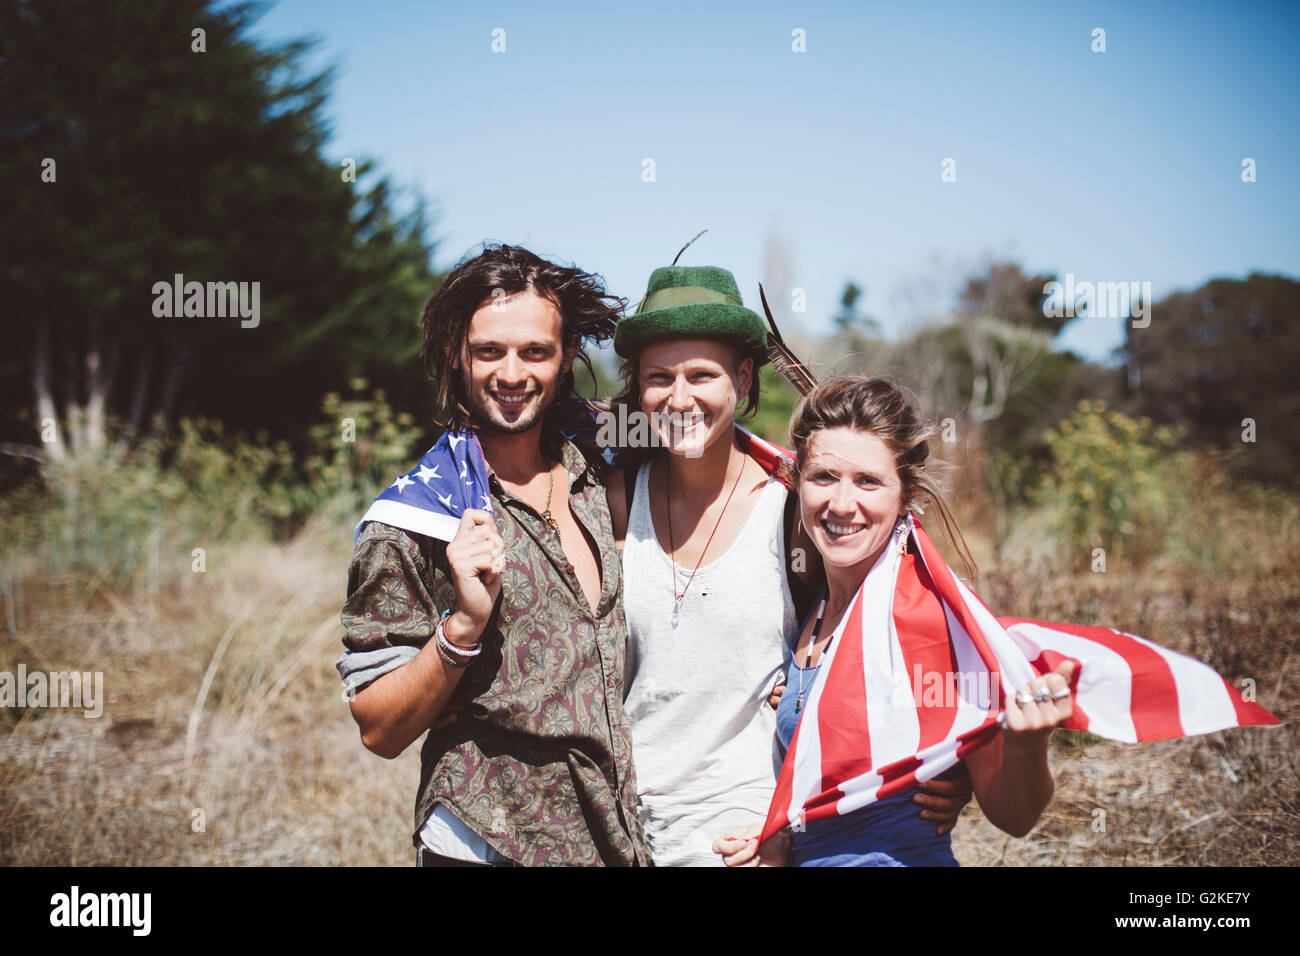 Ritratto di tre hippies sorridente con noi bandiera nella natura Foto Stock